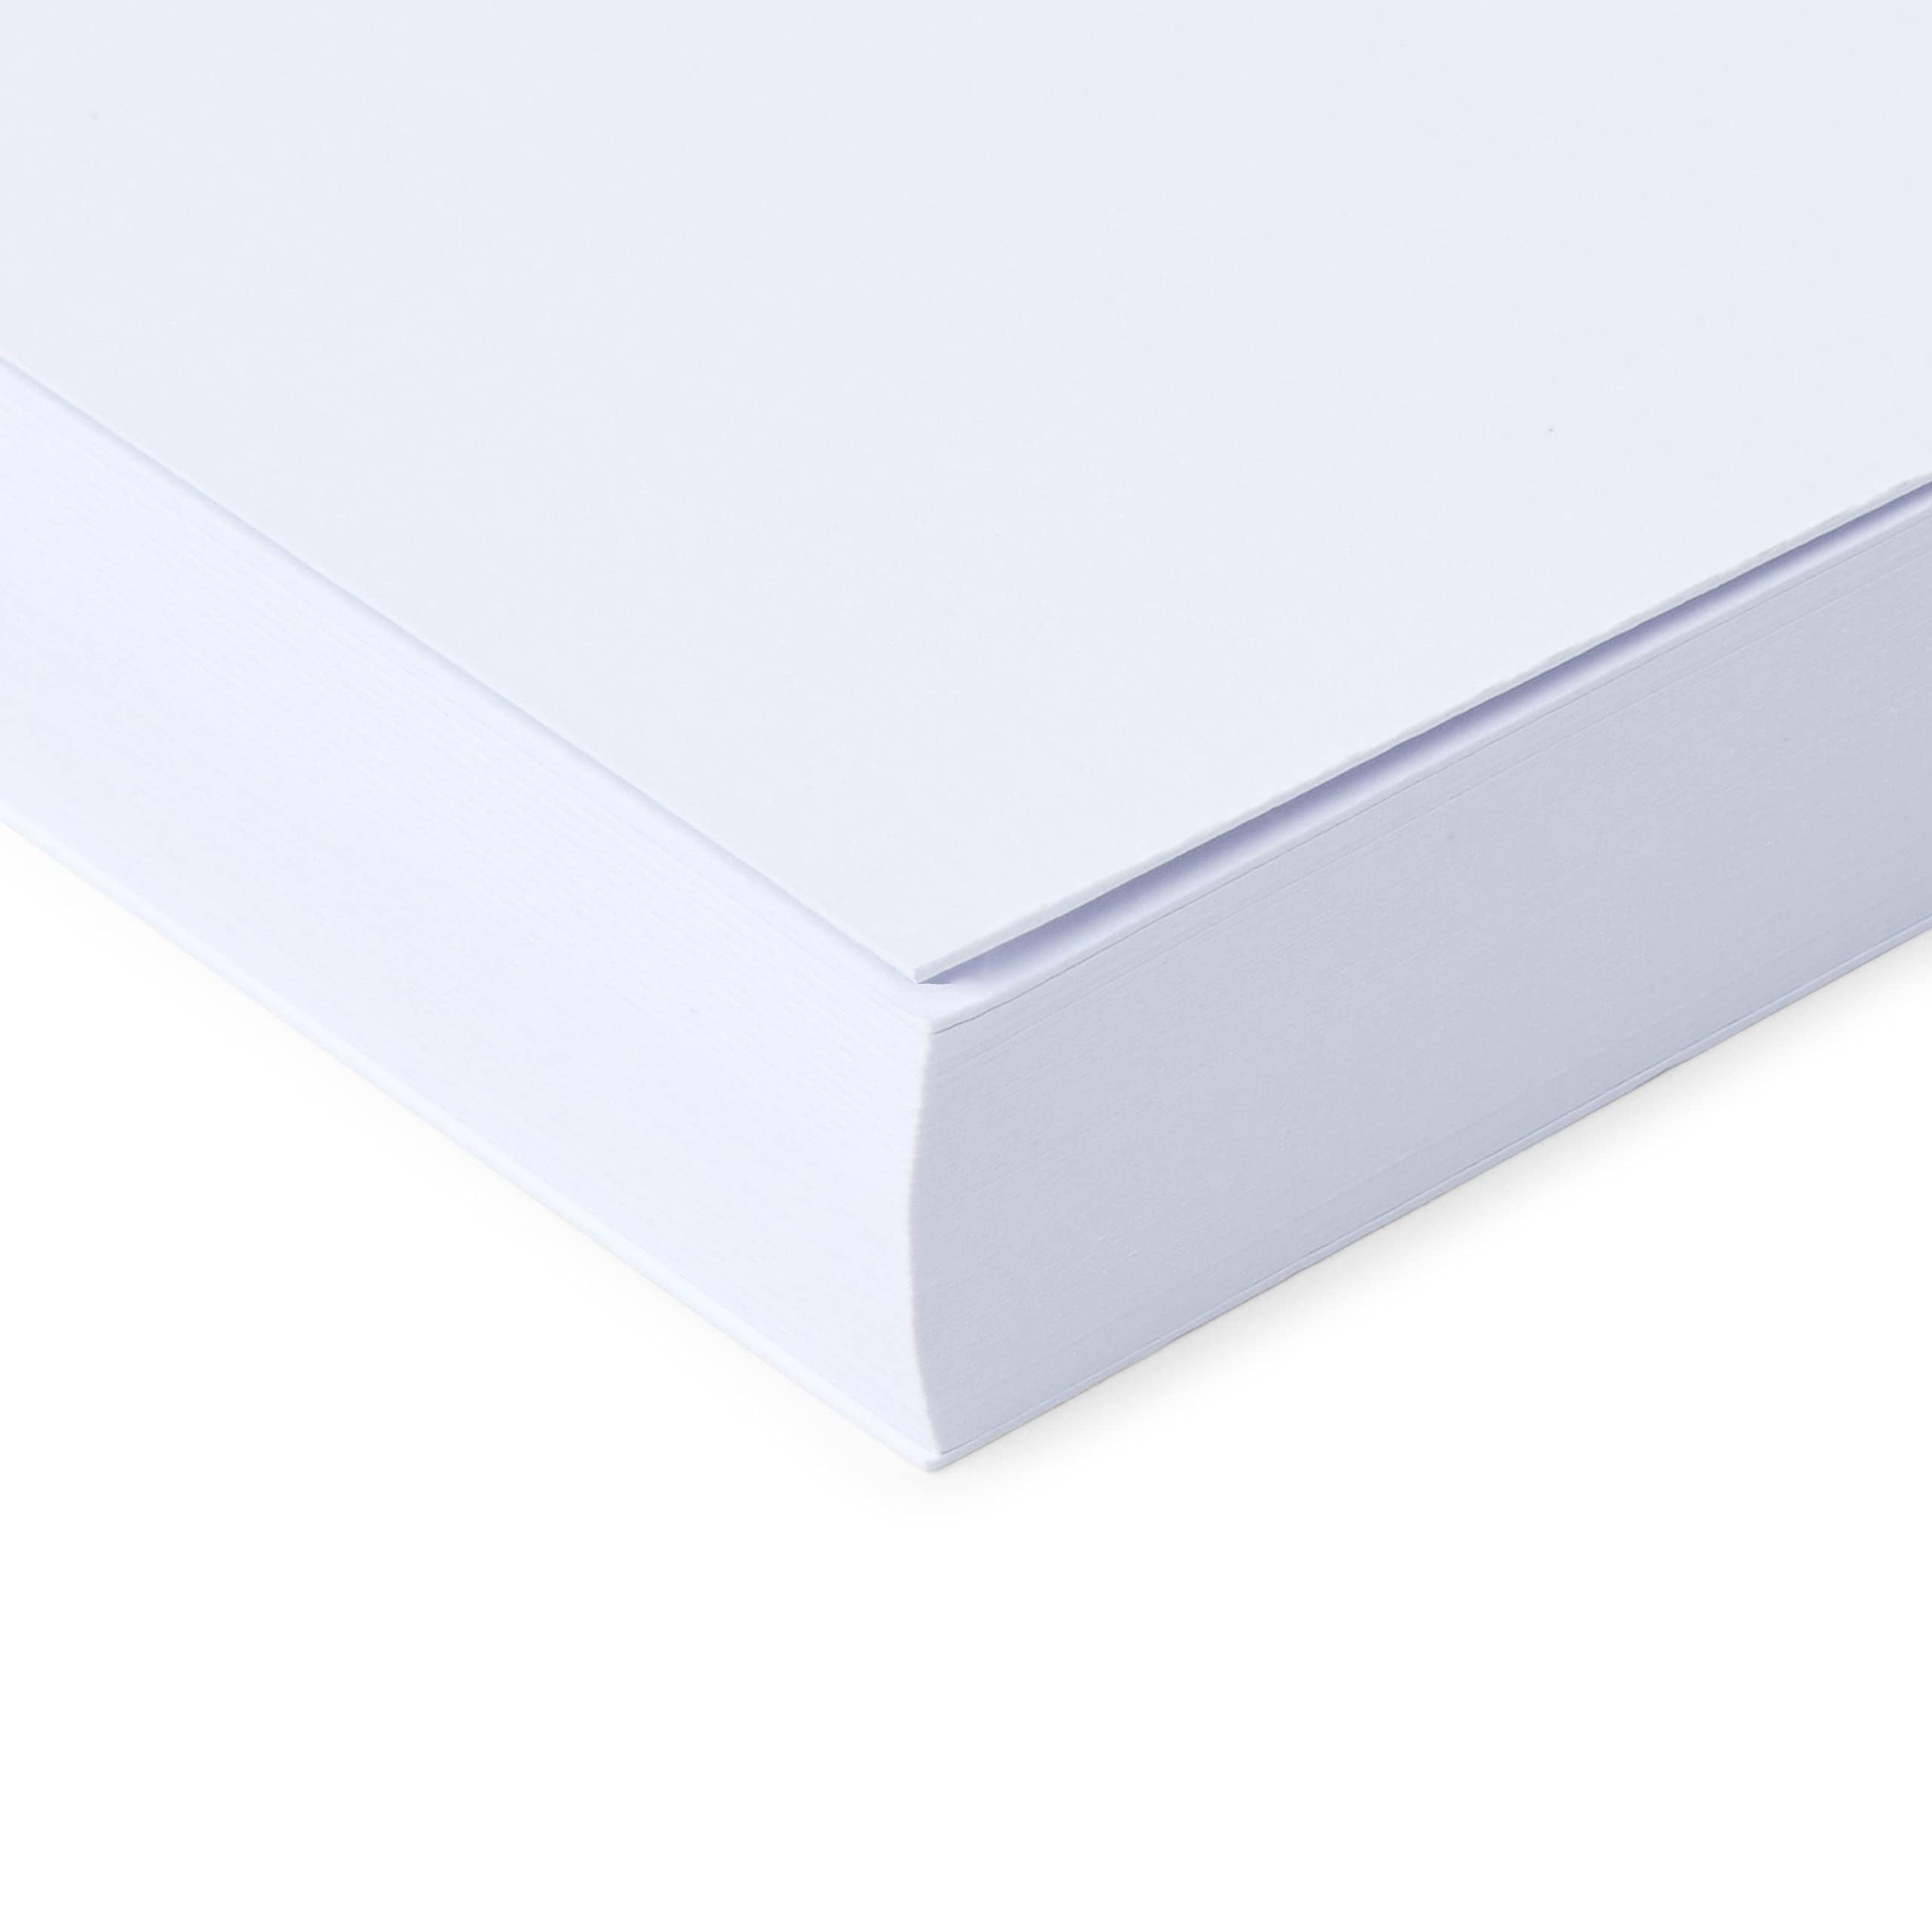 Pack de 80 sobres de color blanco especiales para tarjetas con medidas de  70 x 110 con. Medias de 70 x 110 con cierre de humedec